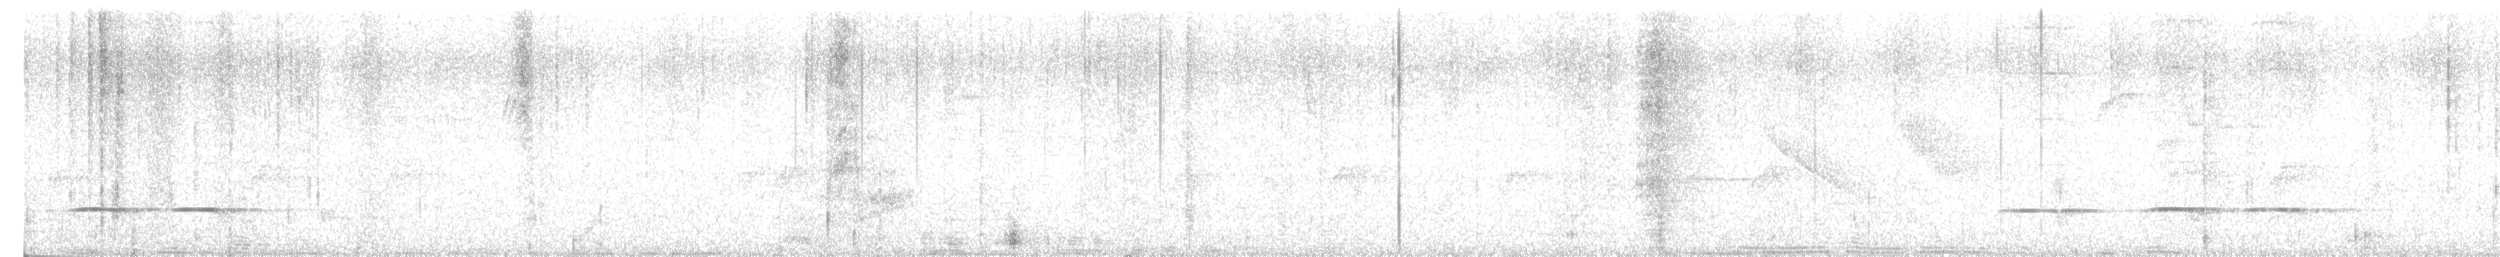 Ak Karınlı Yerçavuşu - ML618210511